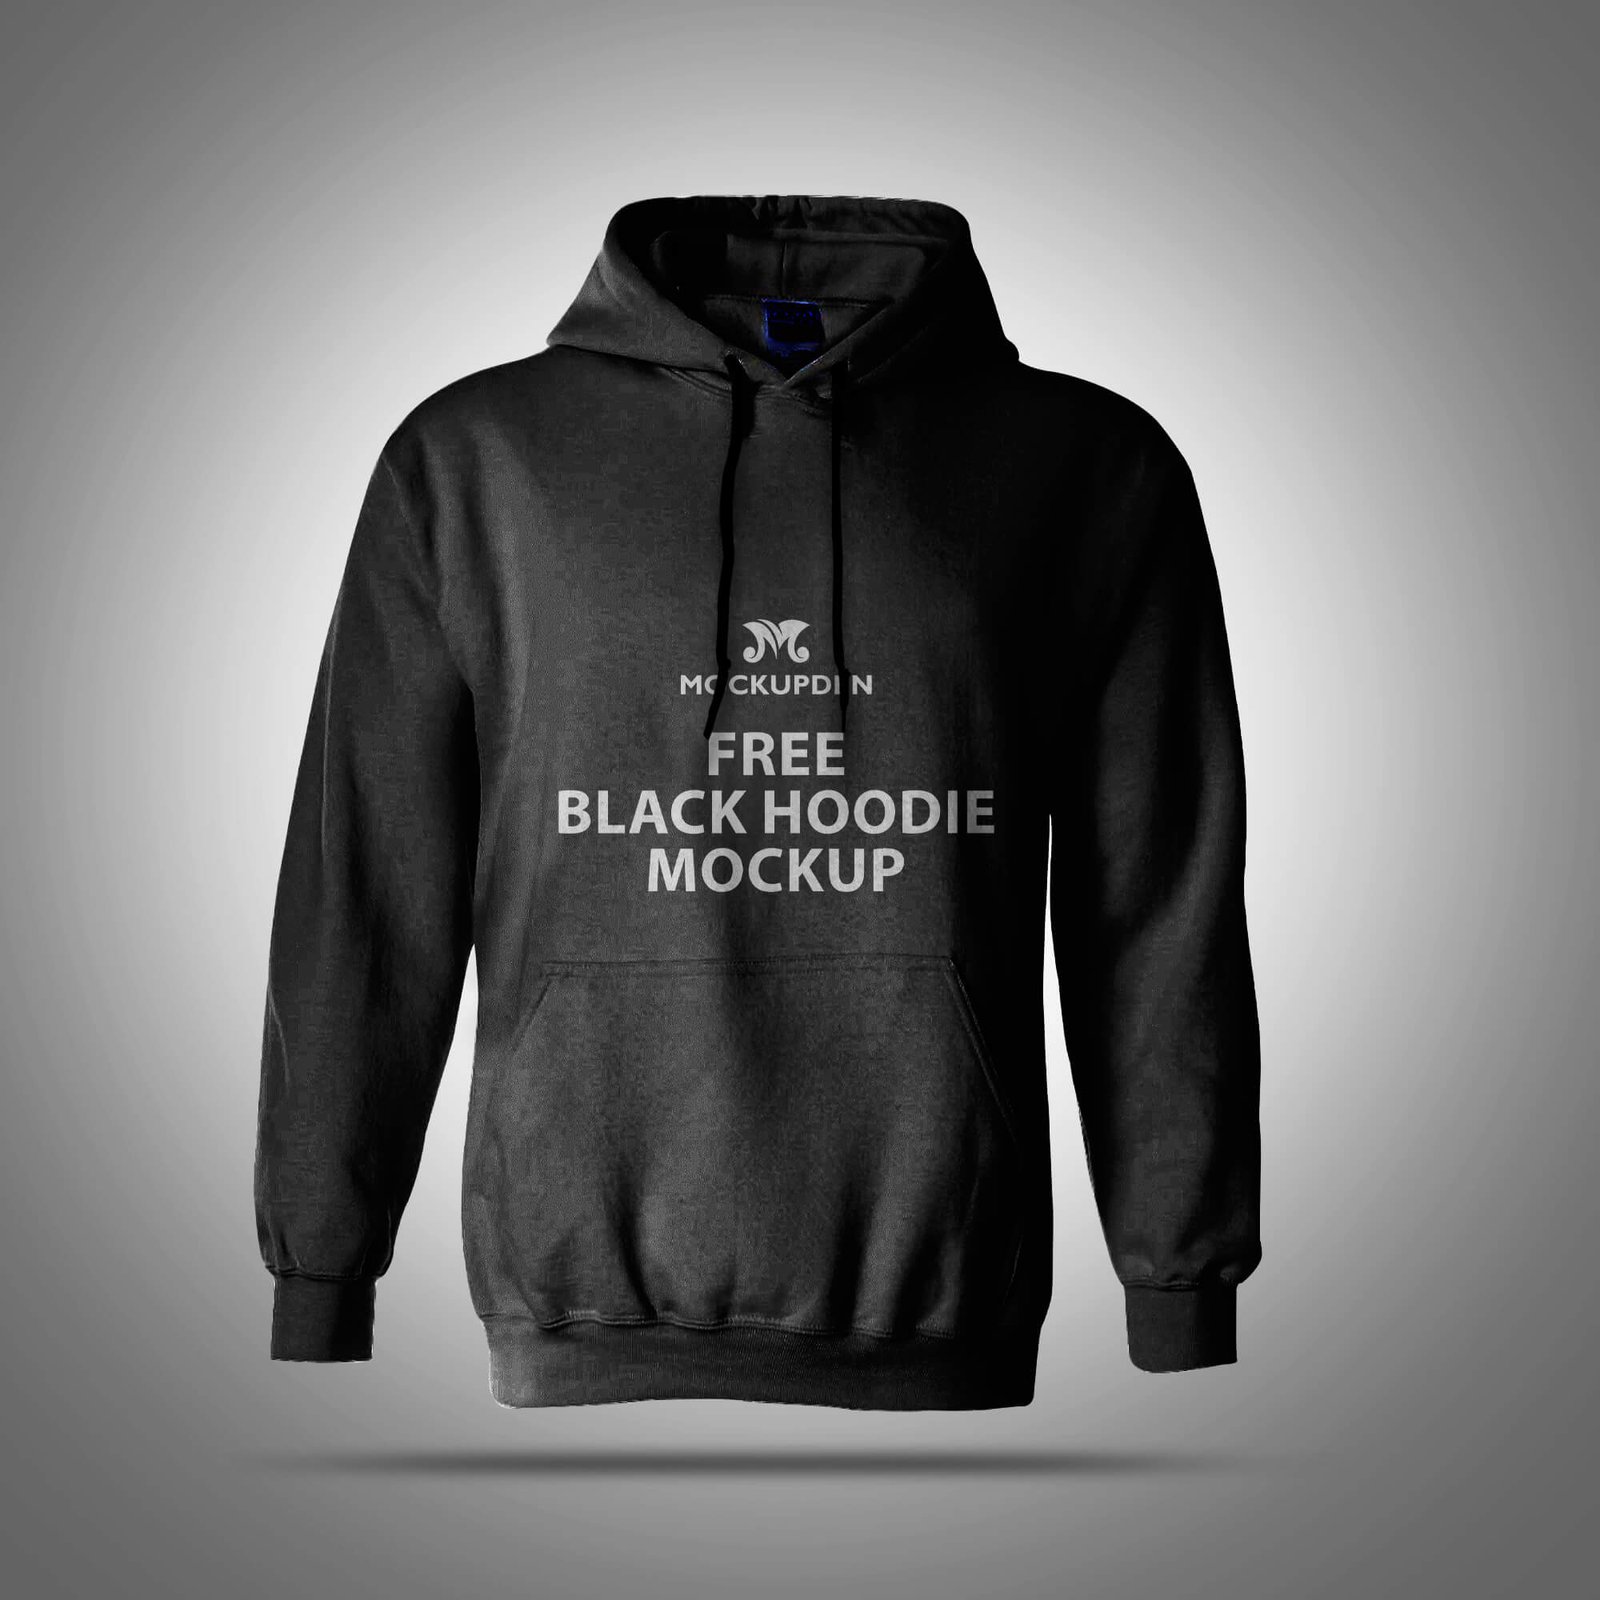 Free Black Hoodie Mockup PSD Template